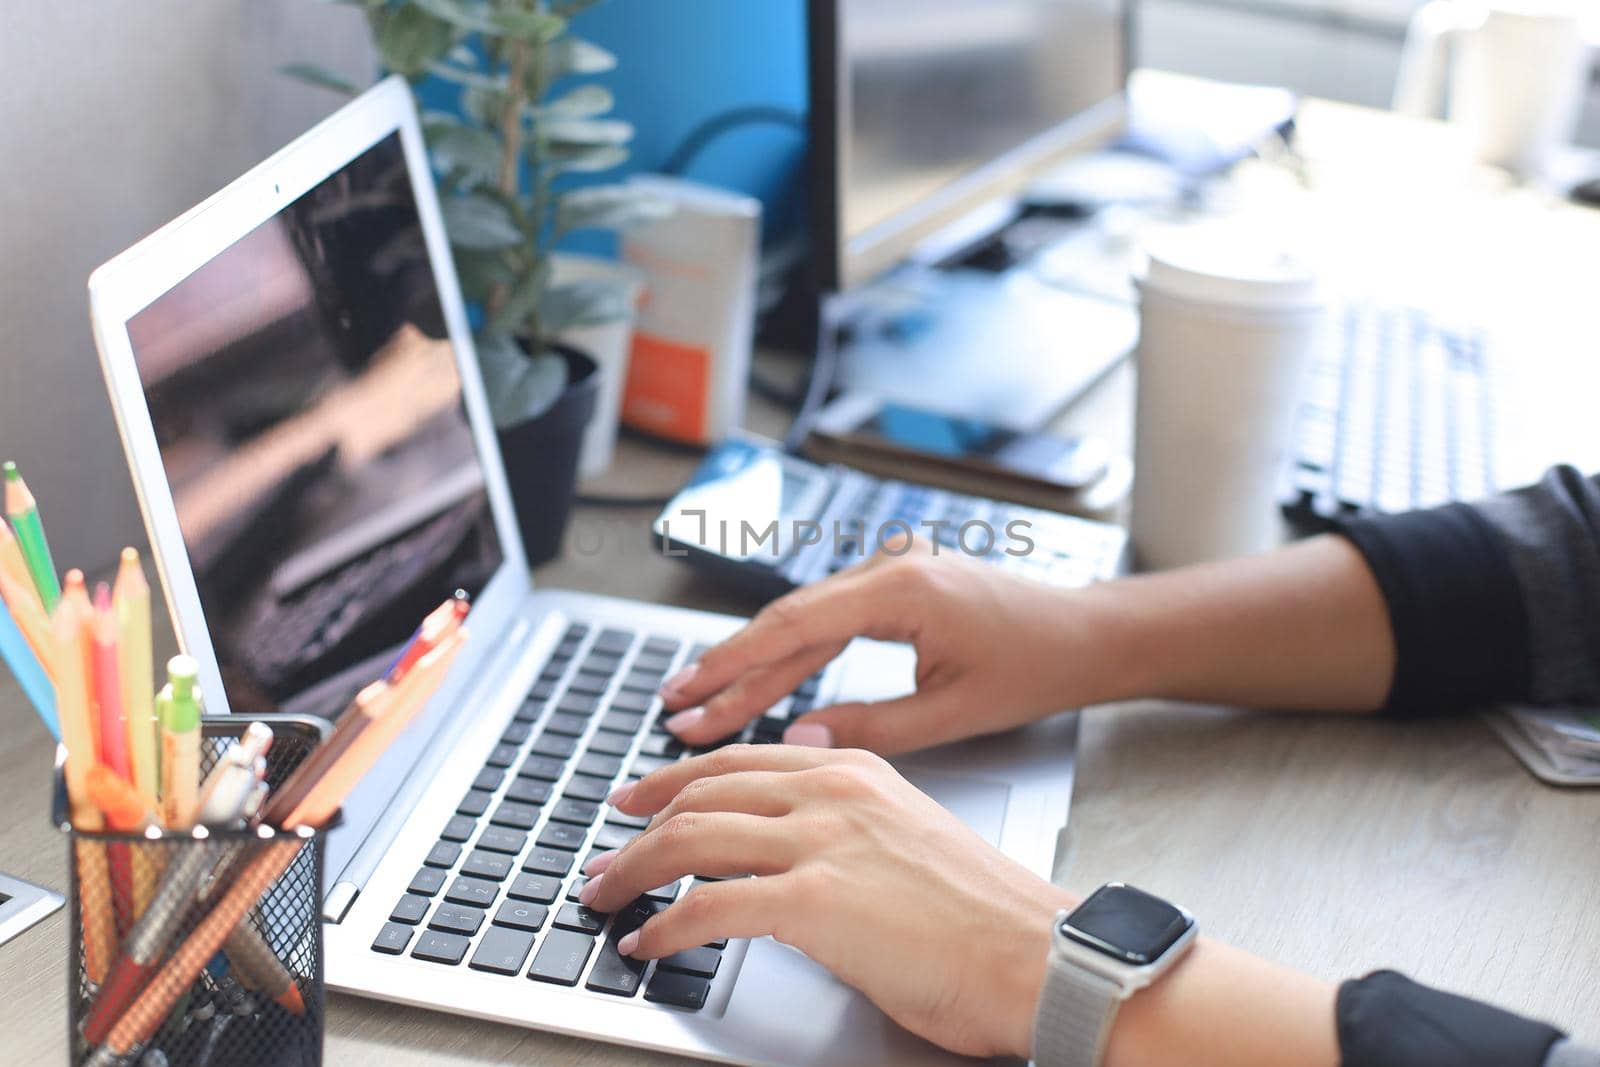 Woman hands pressing keys on a laptop keyboard in office